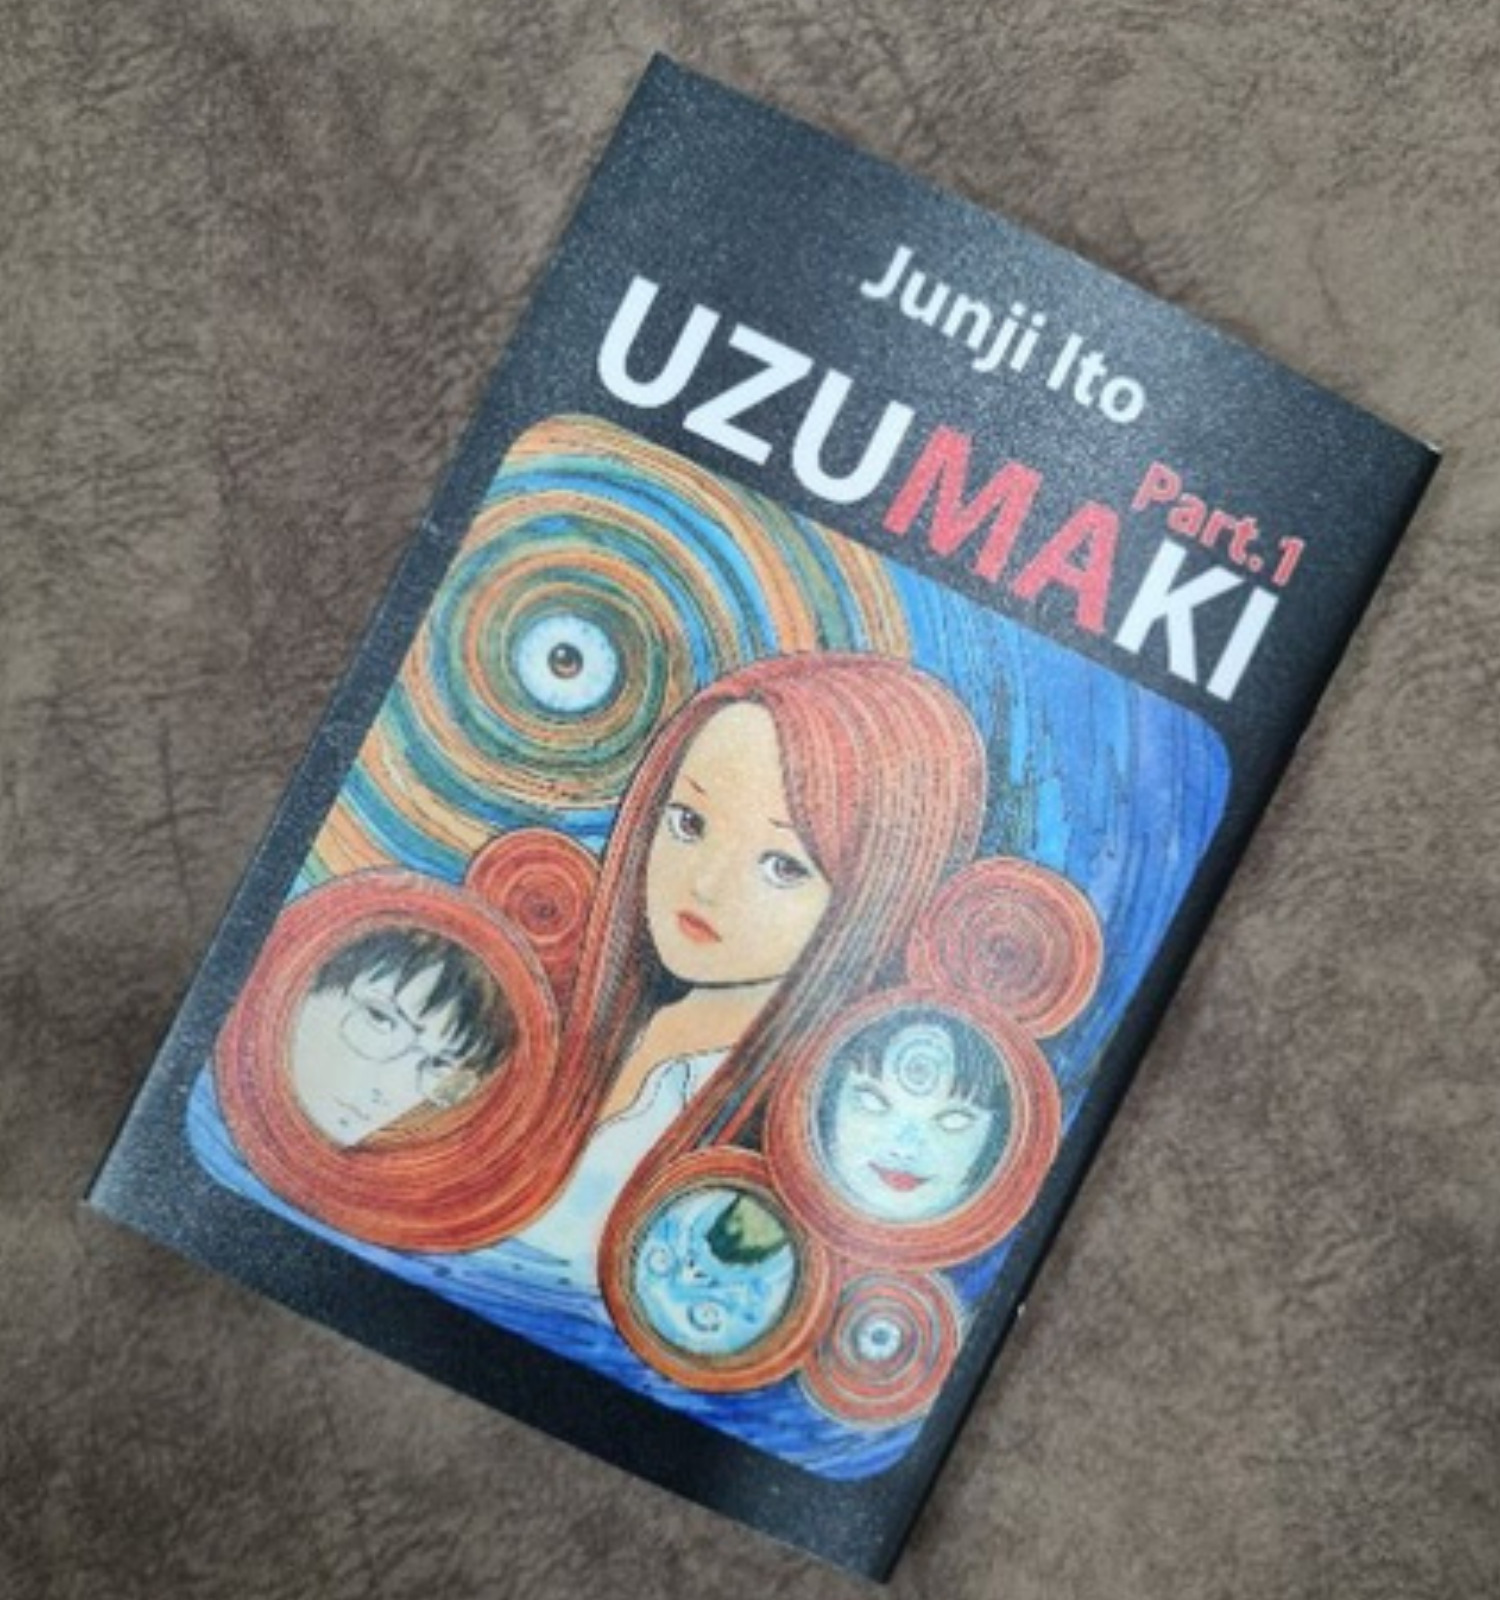 Uzumaki by Junji Ito Manga Loose Set Volume 1-3(END) English Version Comic Book